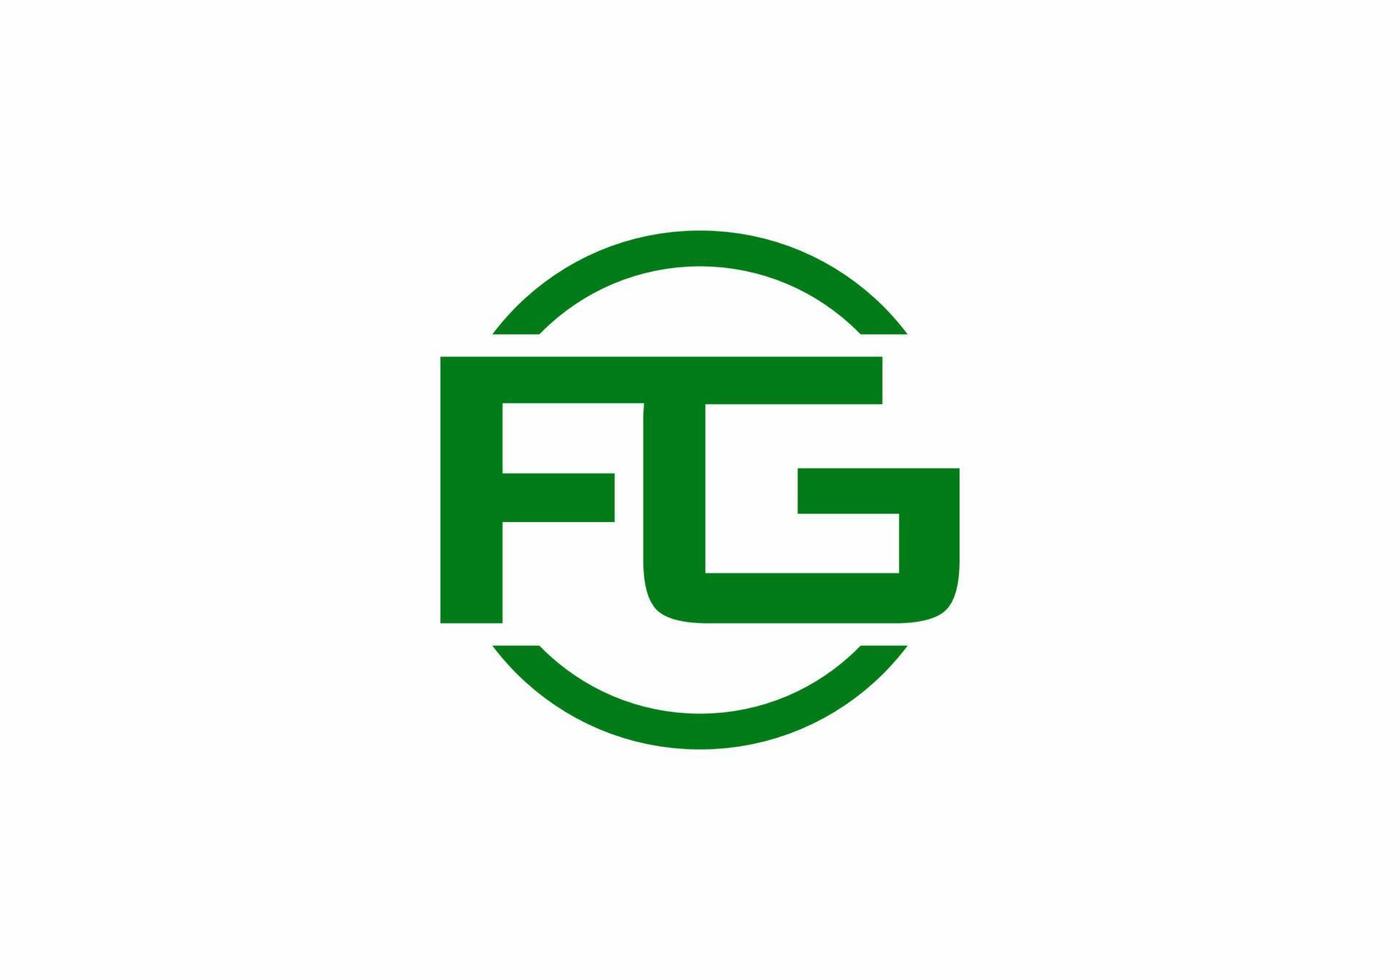 Green FG initial letter logo vector